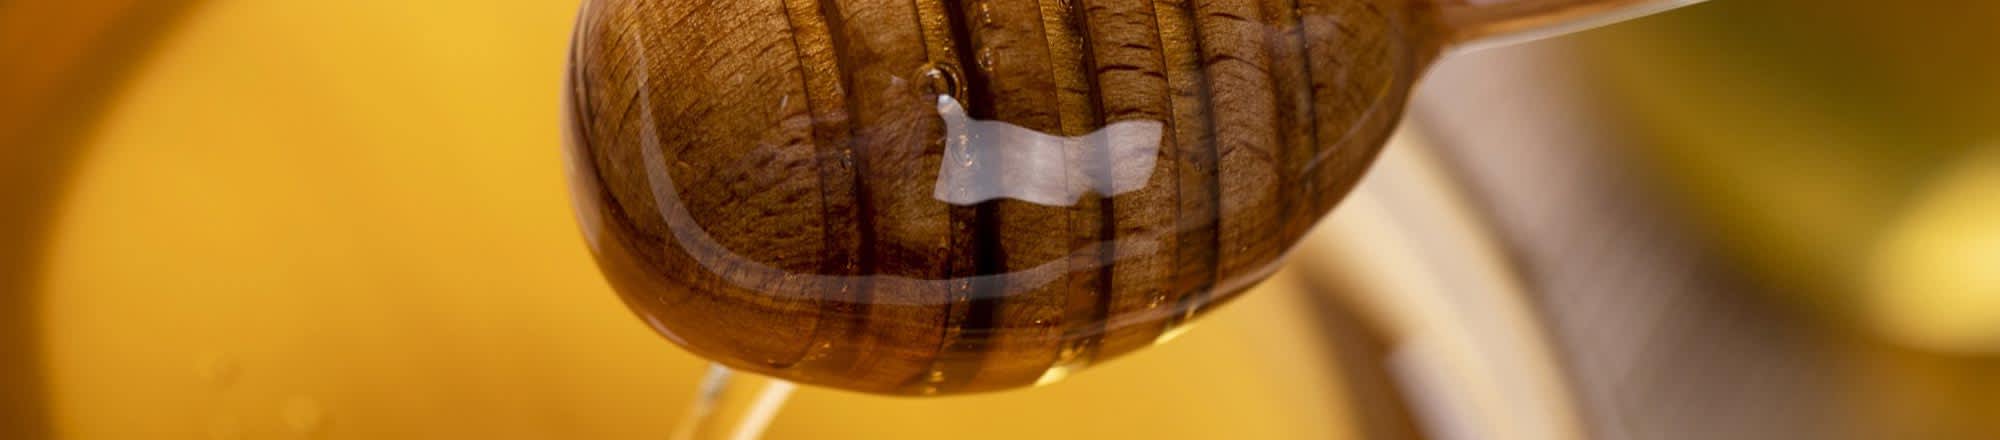 Abeille géante de Wallace : on a retrouvé la plus grosse abeille du monde